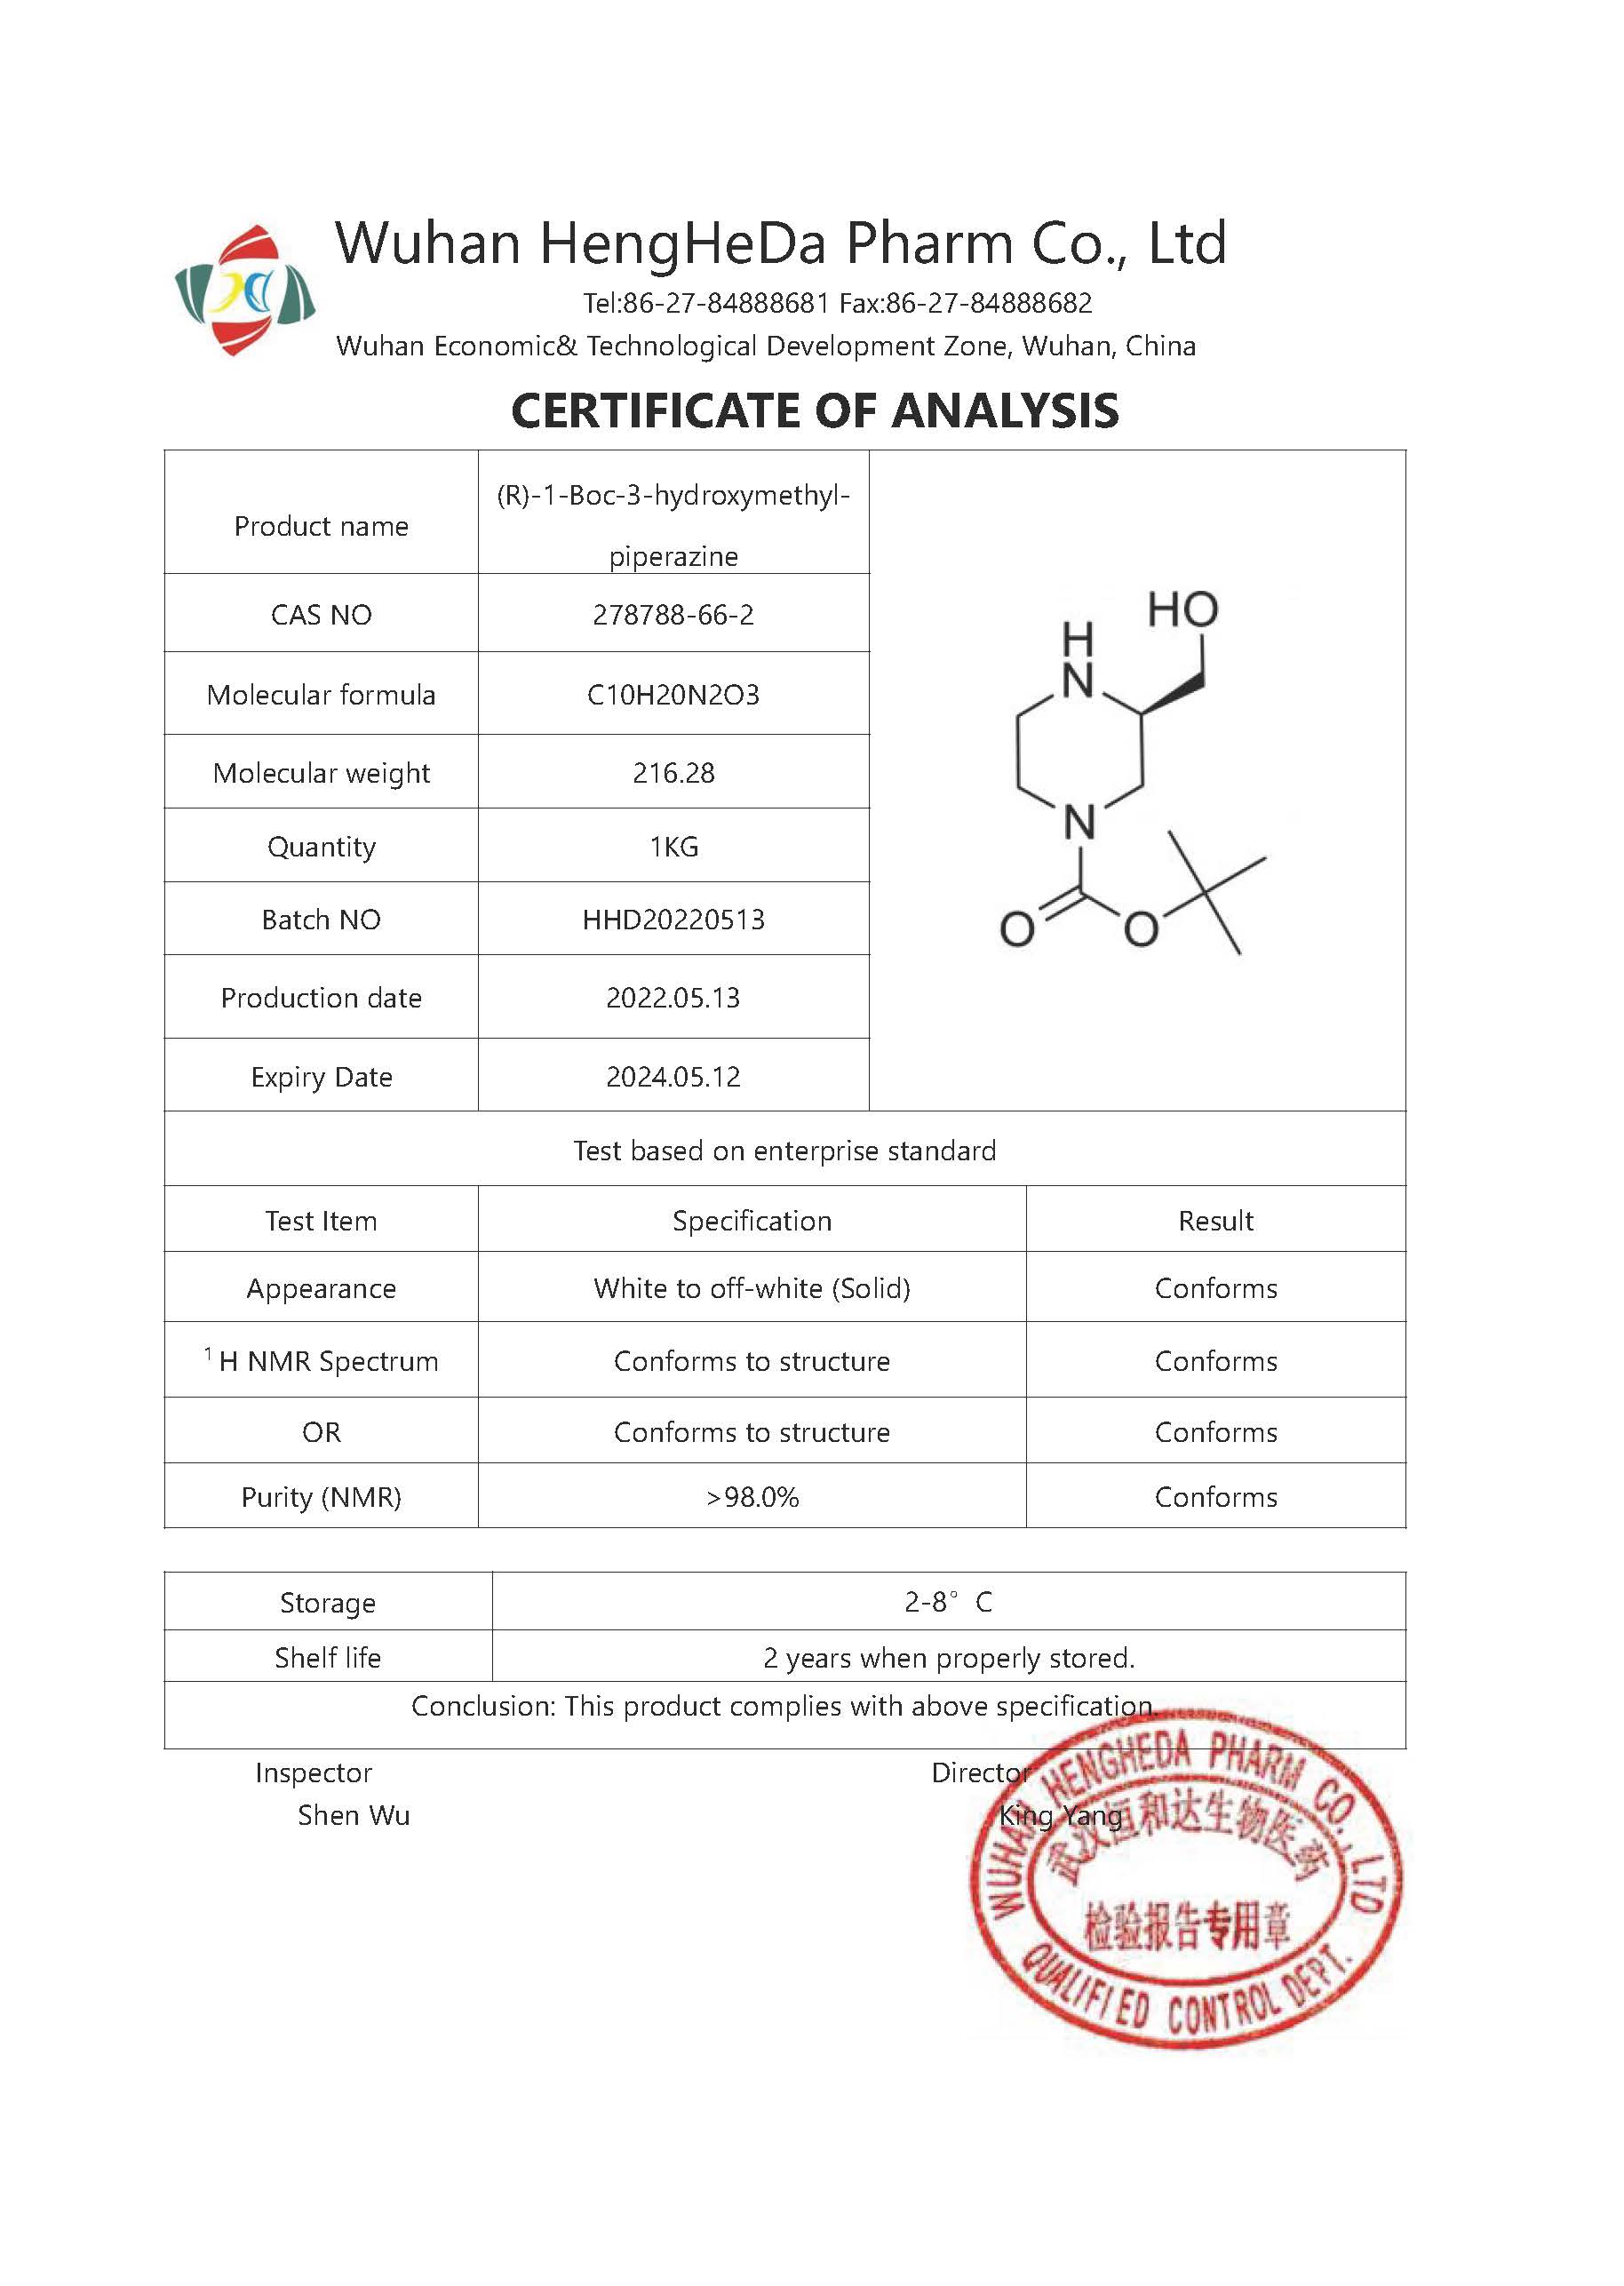 Kaufen (R)-4-N-Boc-2-HydroxyMethyl-piperazin CAS 278788-66-2;(R)-4-N-Boc-2-HydroxyMethyl-piperazin CAS 278788-66-2 Preis;(R)-4-N-Boc-2-HydroxyMethyl-piperazin CAS 278788-66-2 Marken;(R)-4-N-Boc-2-HydroxyMethyl-piperazin CAS 278788-66-2 Hersteller;(R)-4-N-Boc-2-HydroxyMethyl-piperazin CAS 278788-66-2 Zitat;(R)-4-N-Boc-2-HydroxyMethyl-piperazin CAS 278788-66-2 Unternehmen